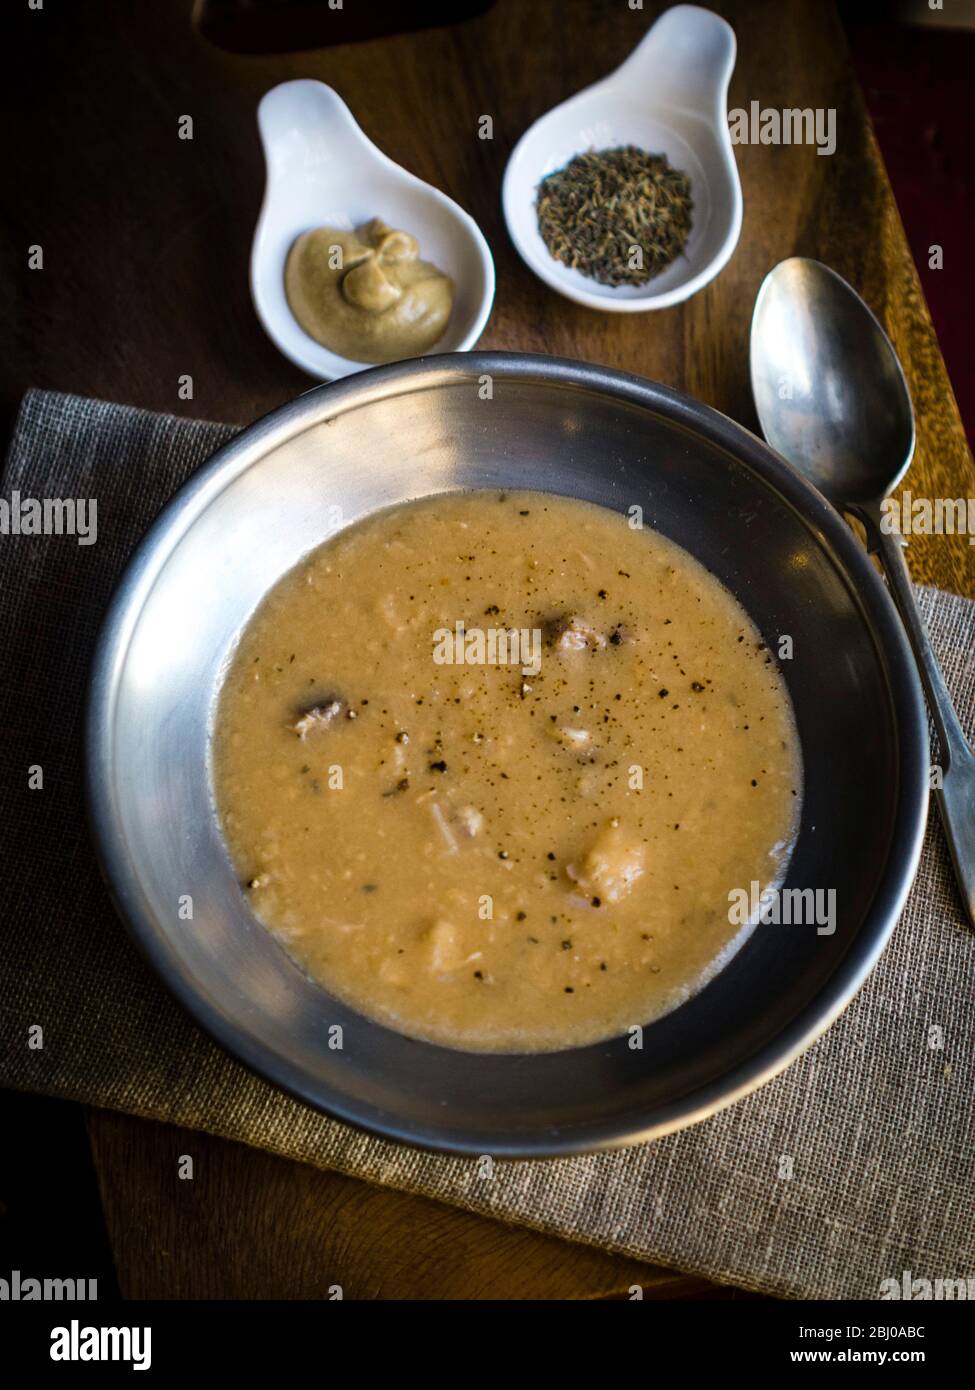 ÌÄ‰Û rtsoppa, zuppa di piselli svedesi gialli, tradizionalmente servita con Slotts senap (senape dolce svedese speziata) e timo secco. Foto Stock